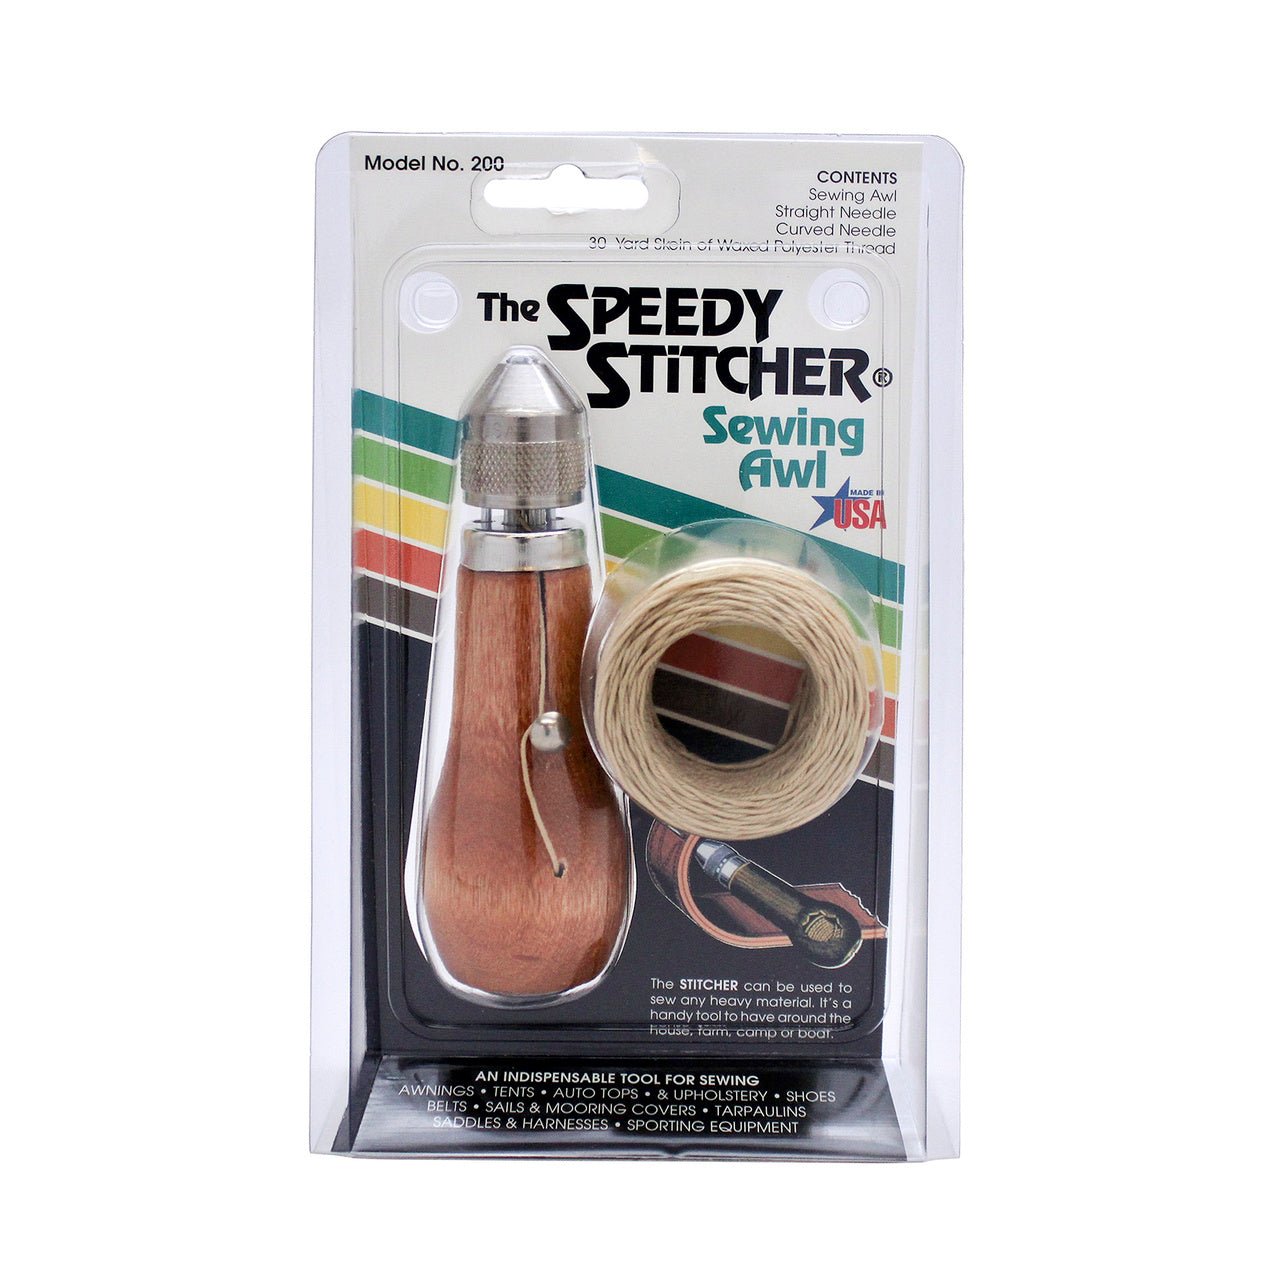 Speedy Stitcher with Thread - merriartist.com